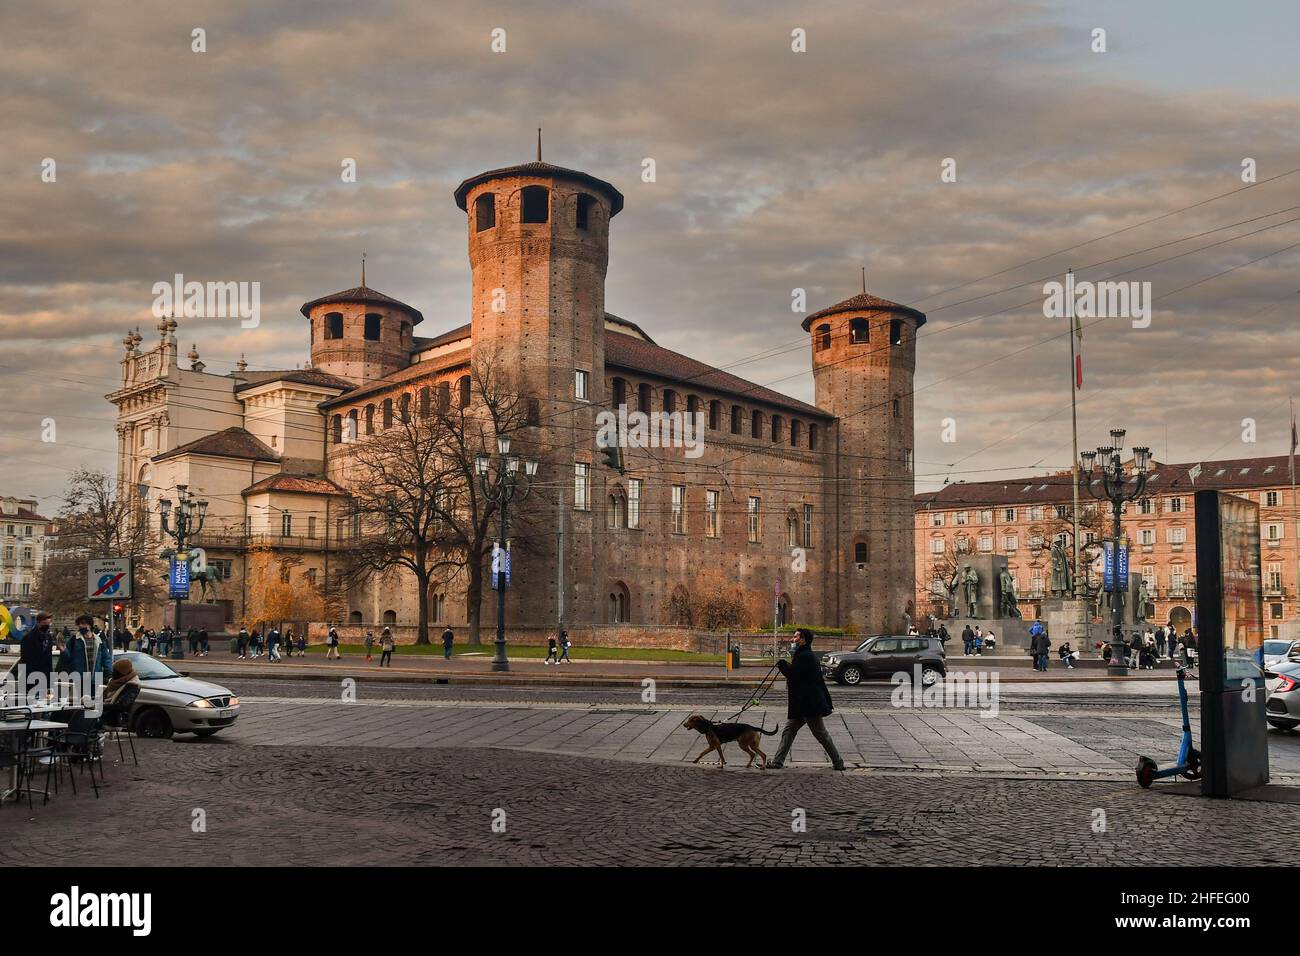 Complexe architectural de Casaforte degli Acaja et Palazzo Madama sur la Piazza Castello, la place principale de Turin, au coucher du soleil en hiver, Piémont, Italie Banque D'Images